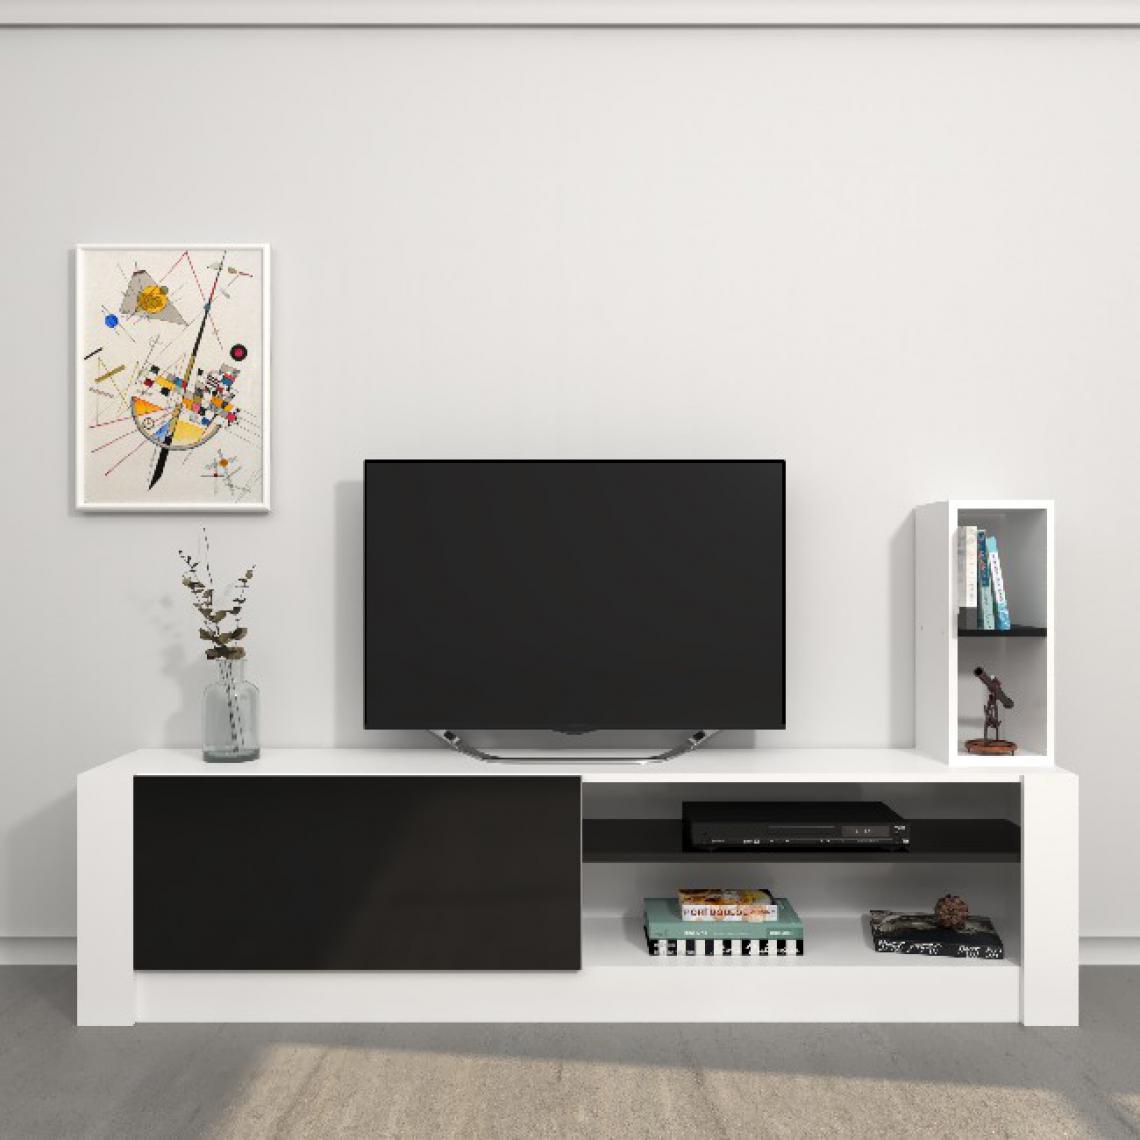 Homemania - HOMEMANIA Meuble TV Gomez - avec des étagères - Salon - Blanc, Noir en Panneau de mélamine, 180 x 30 x 43 cm - Meubles TV, Hi-Fi